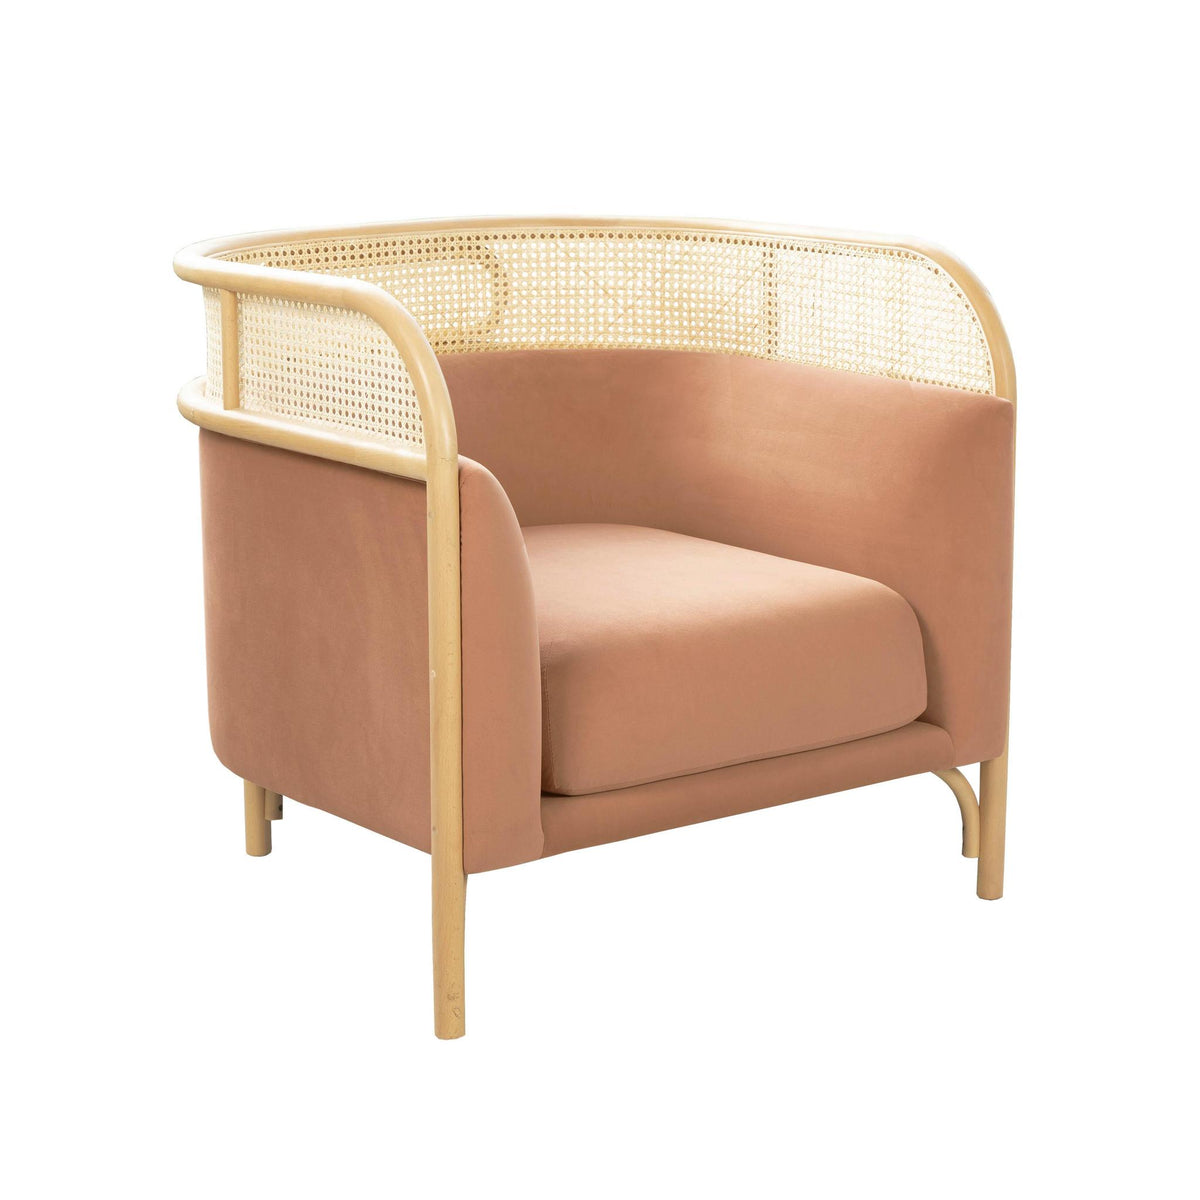 TOV Furniture Modern Desiree Mauve Velvet Accent Chair - TOV-S68523